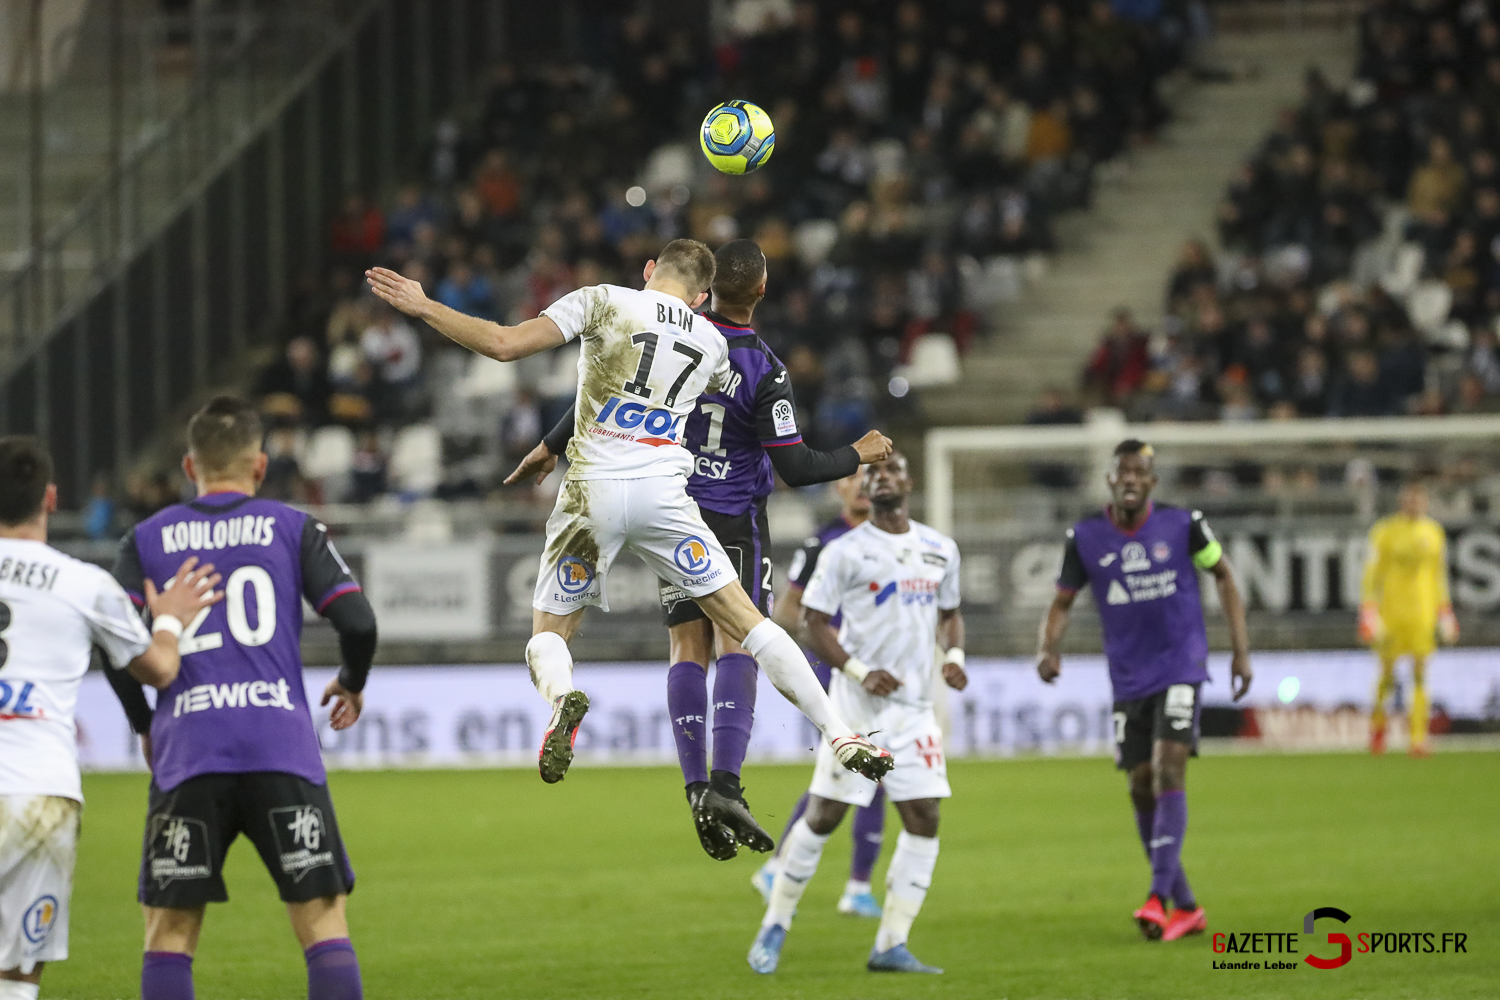 Ligue 1 Football Amiens Vs Toulouse 0041 Leandre Leber Gazettesports